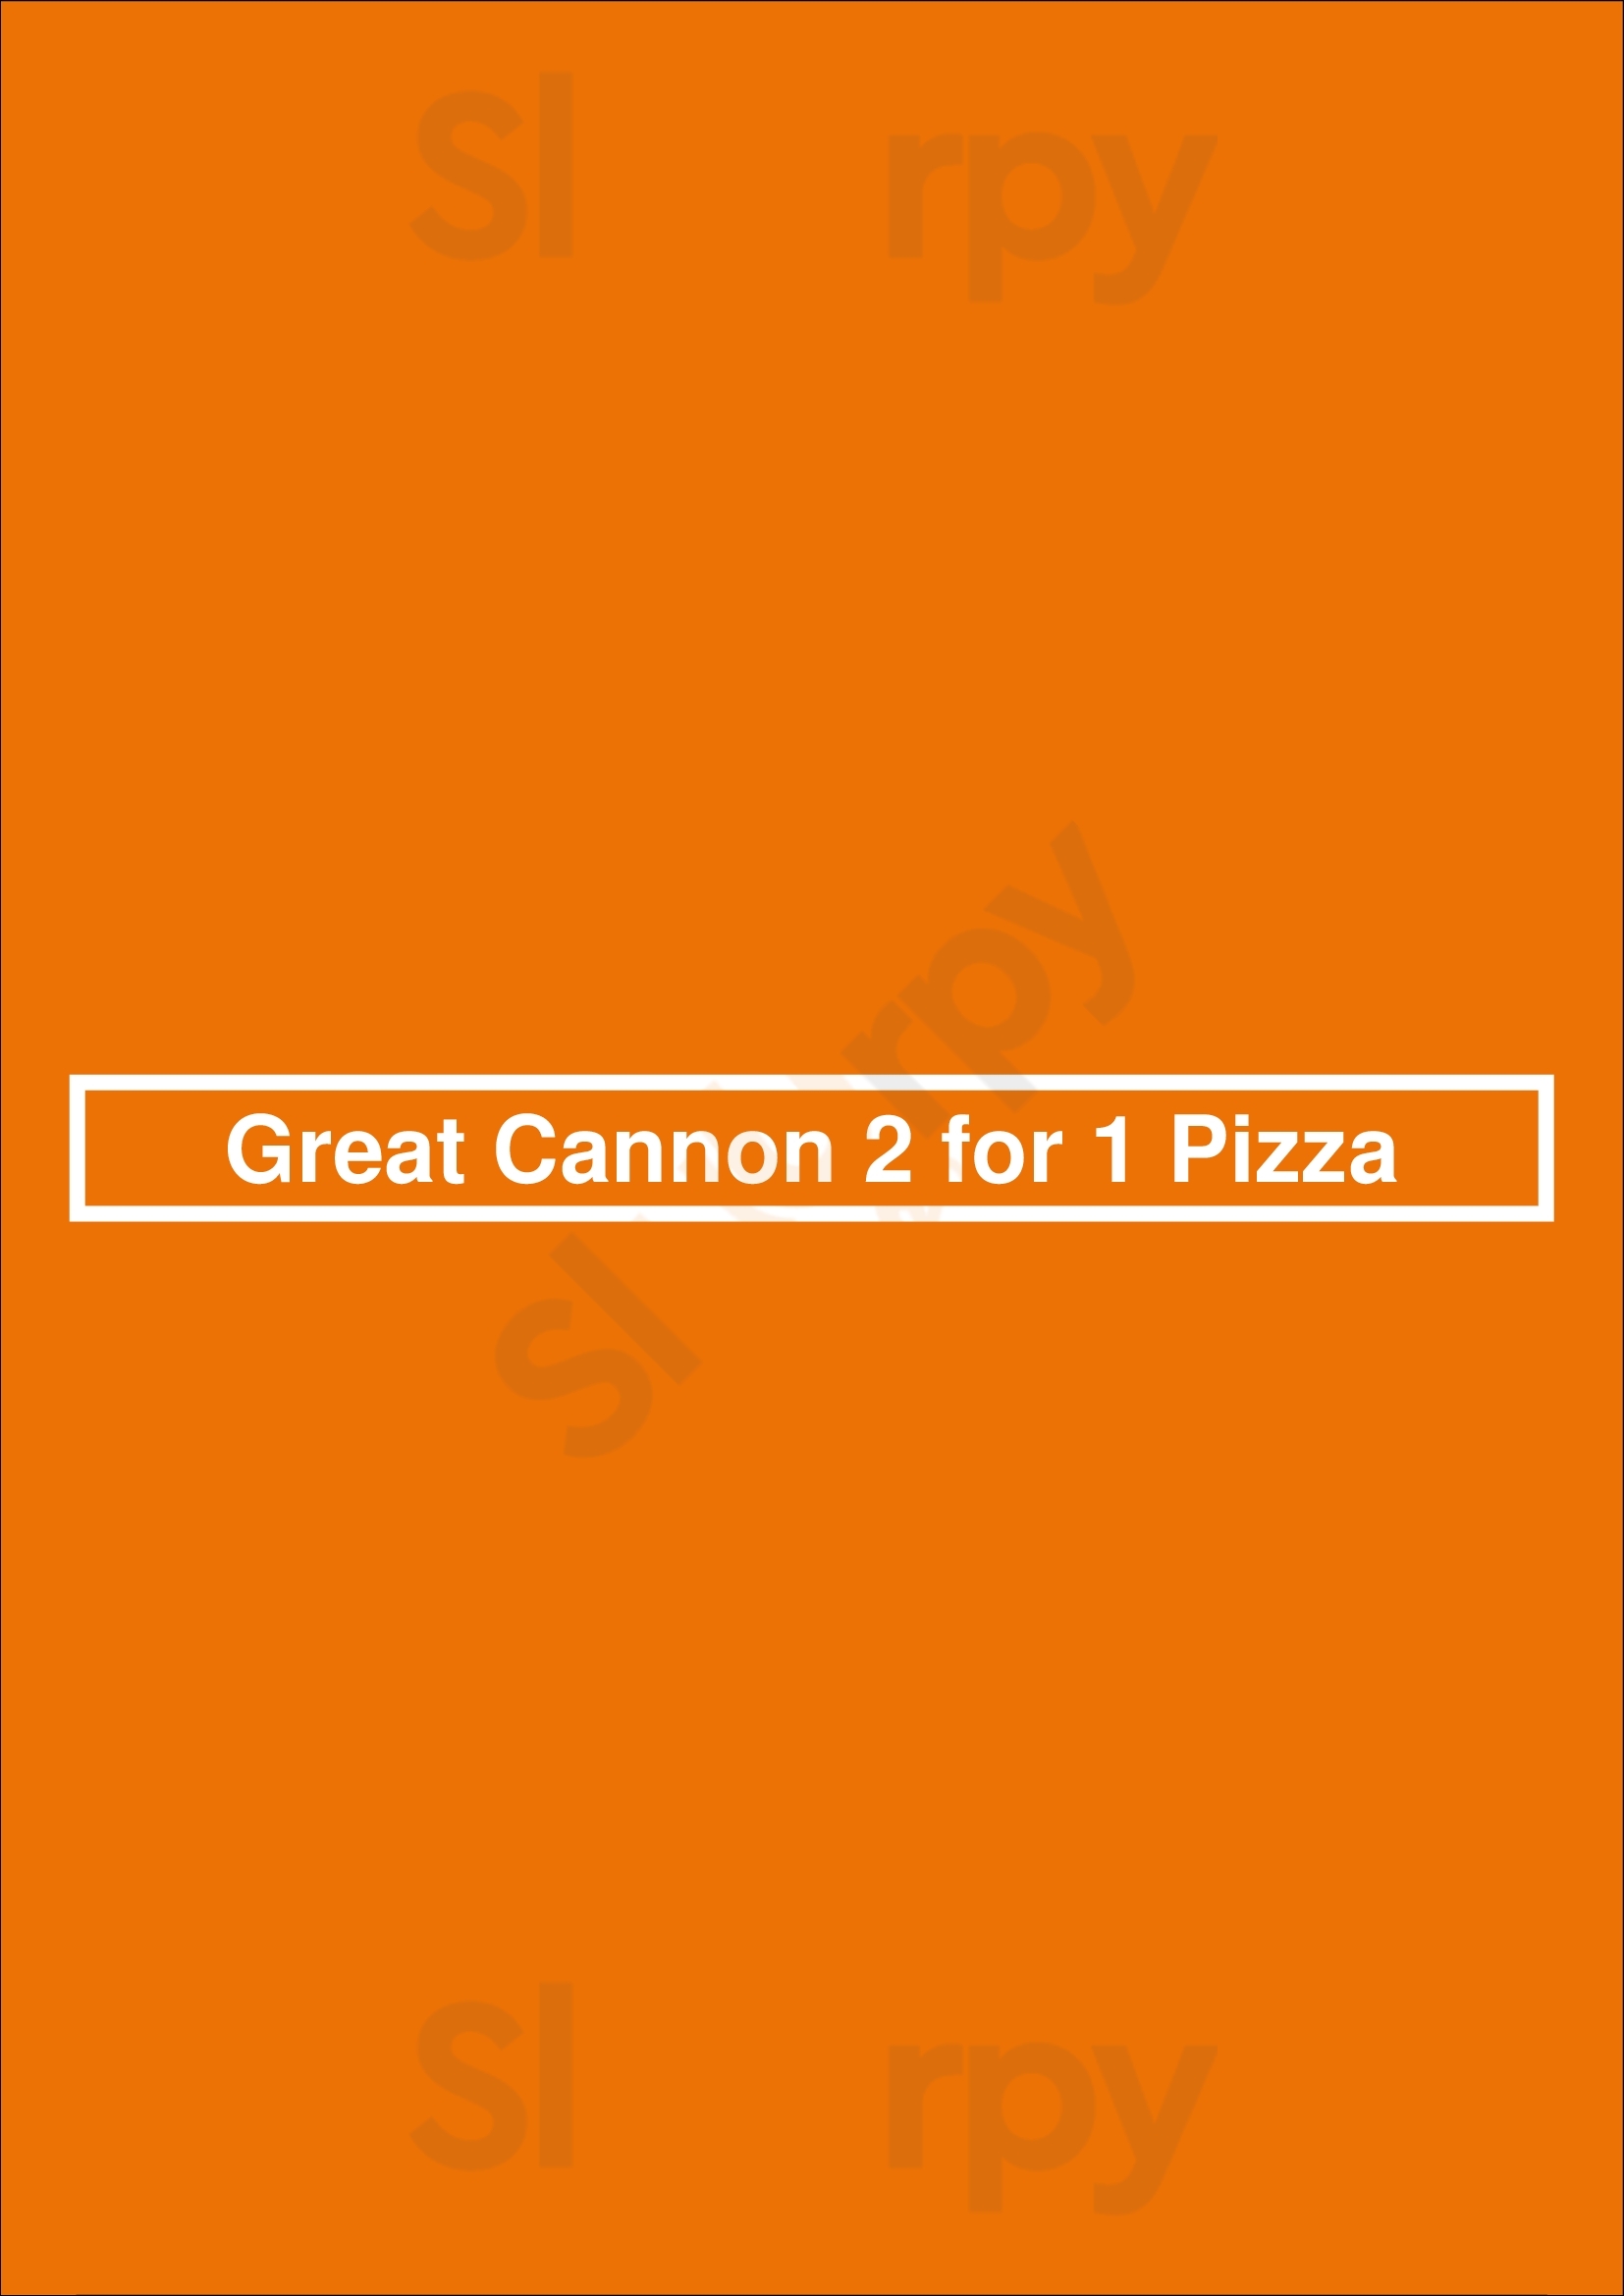 Great Cannon 2 For 1 Pizza Victoria Menu - 1